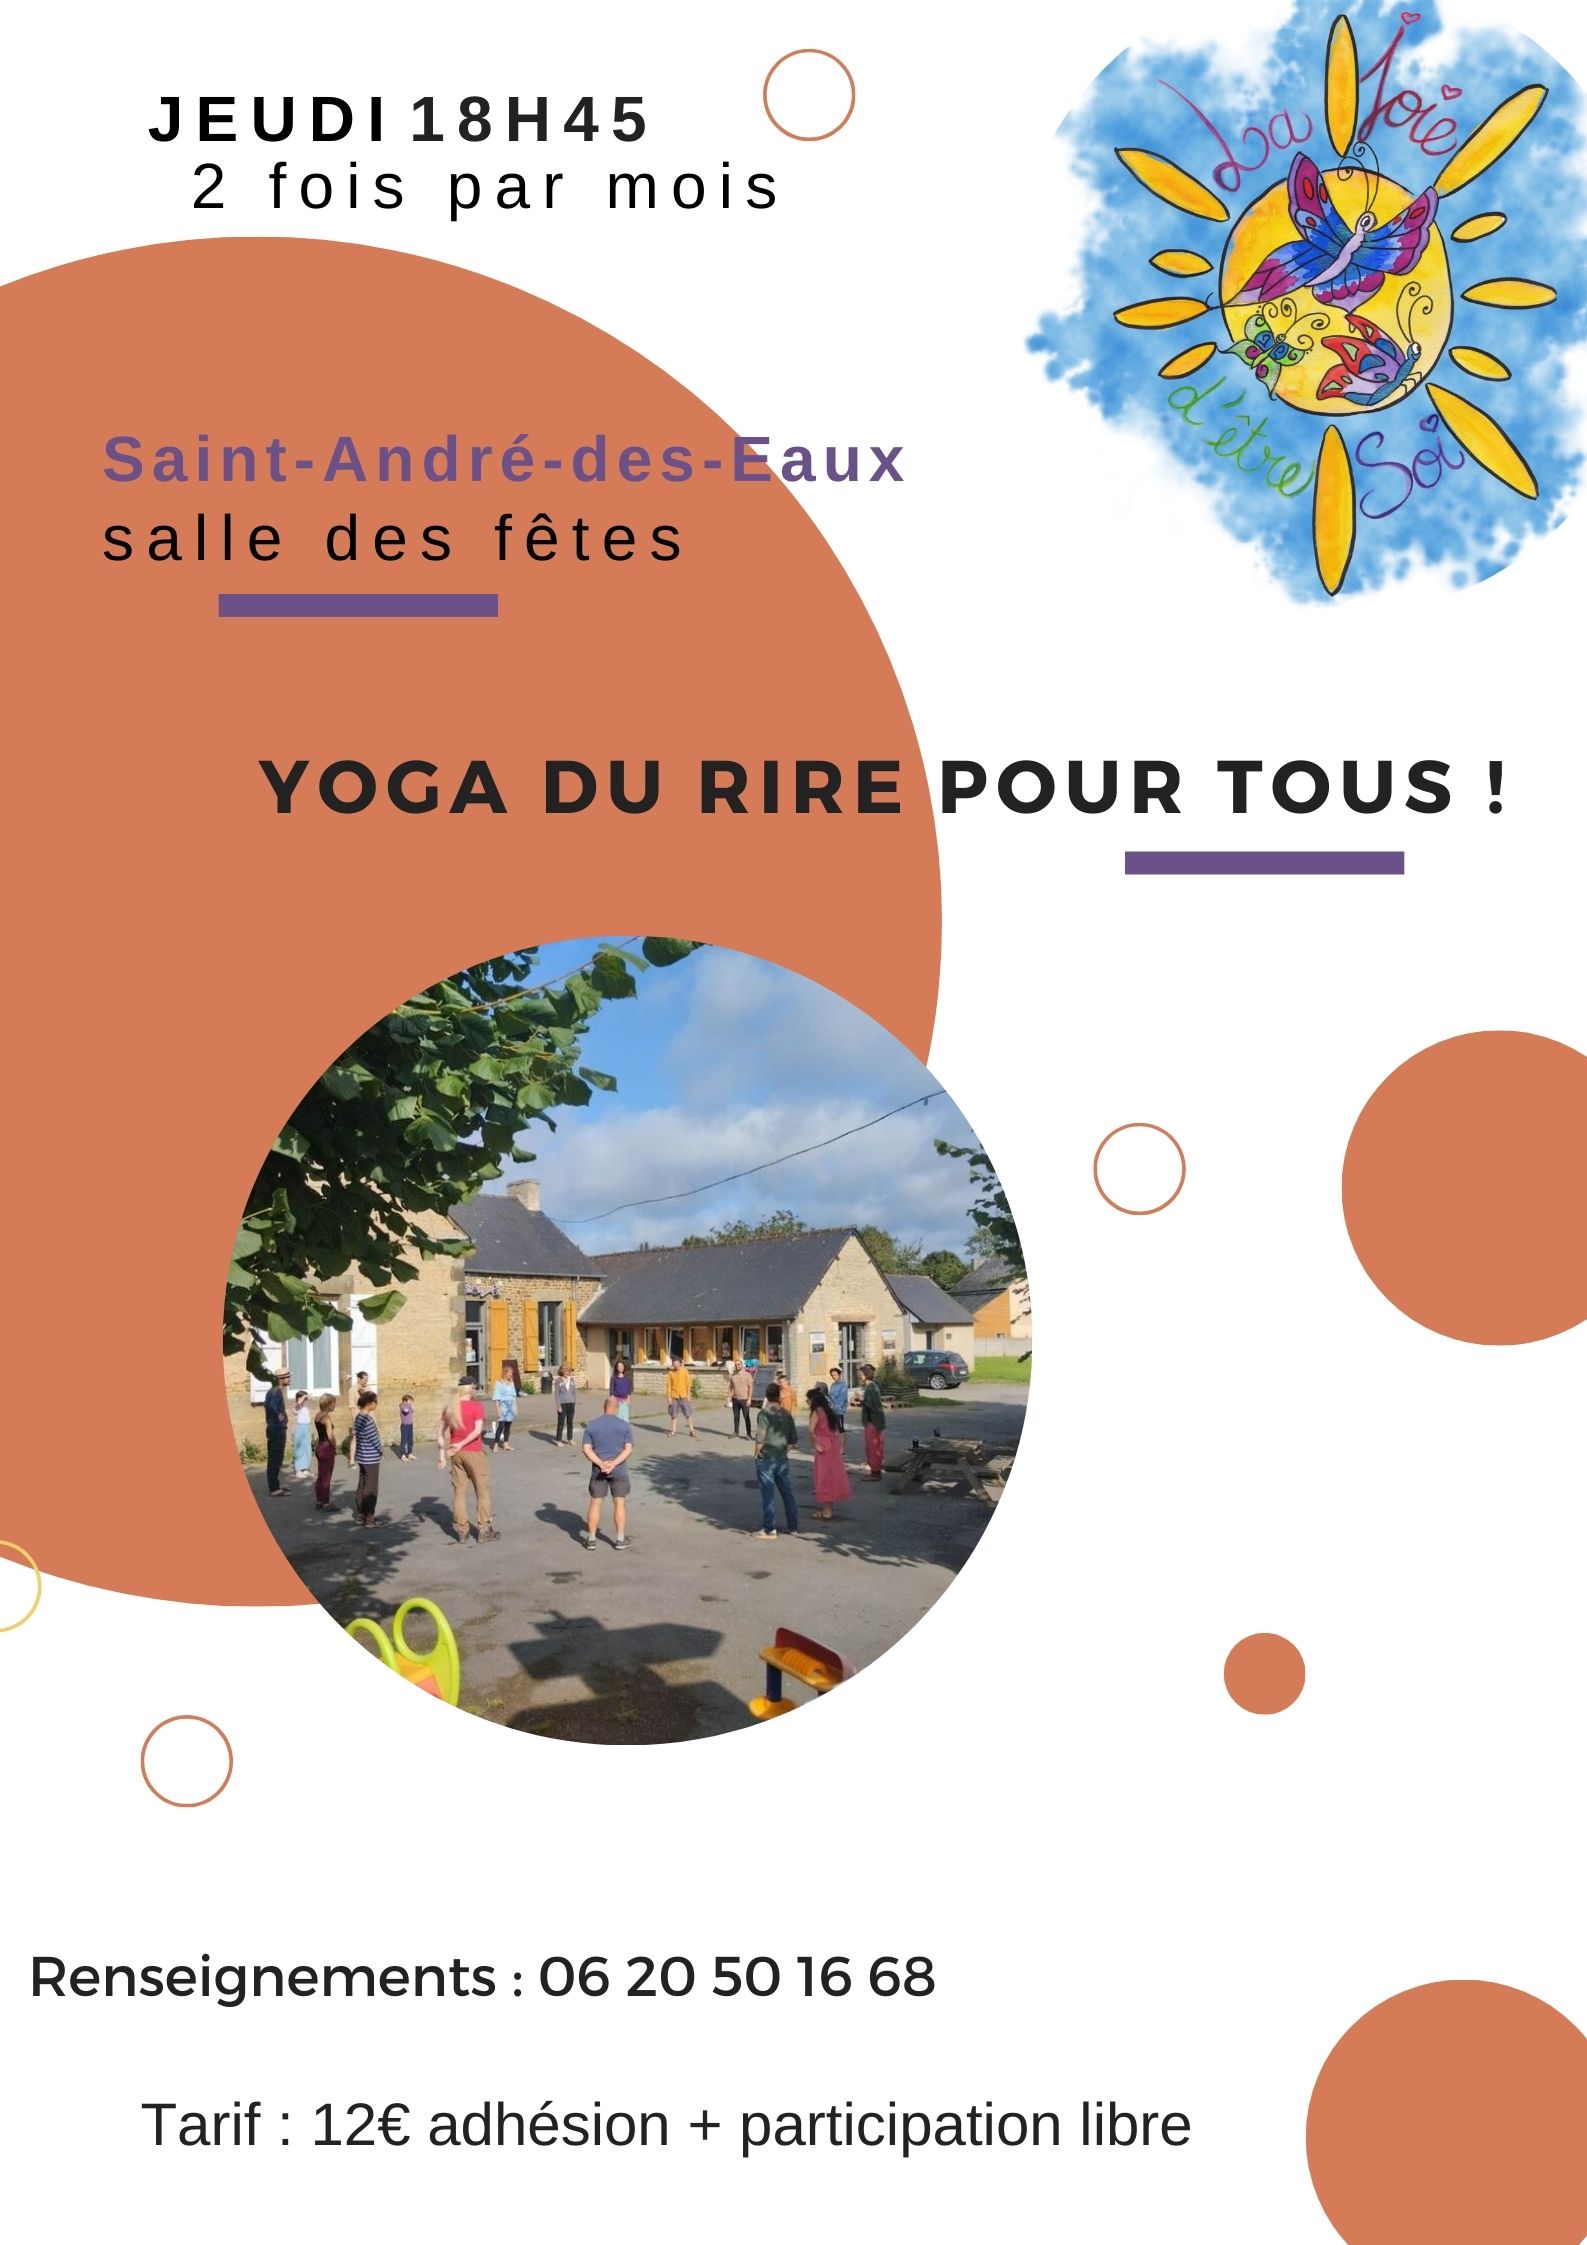 Yoga du rire pour tous à Sant-André-des-eaux